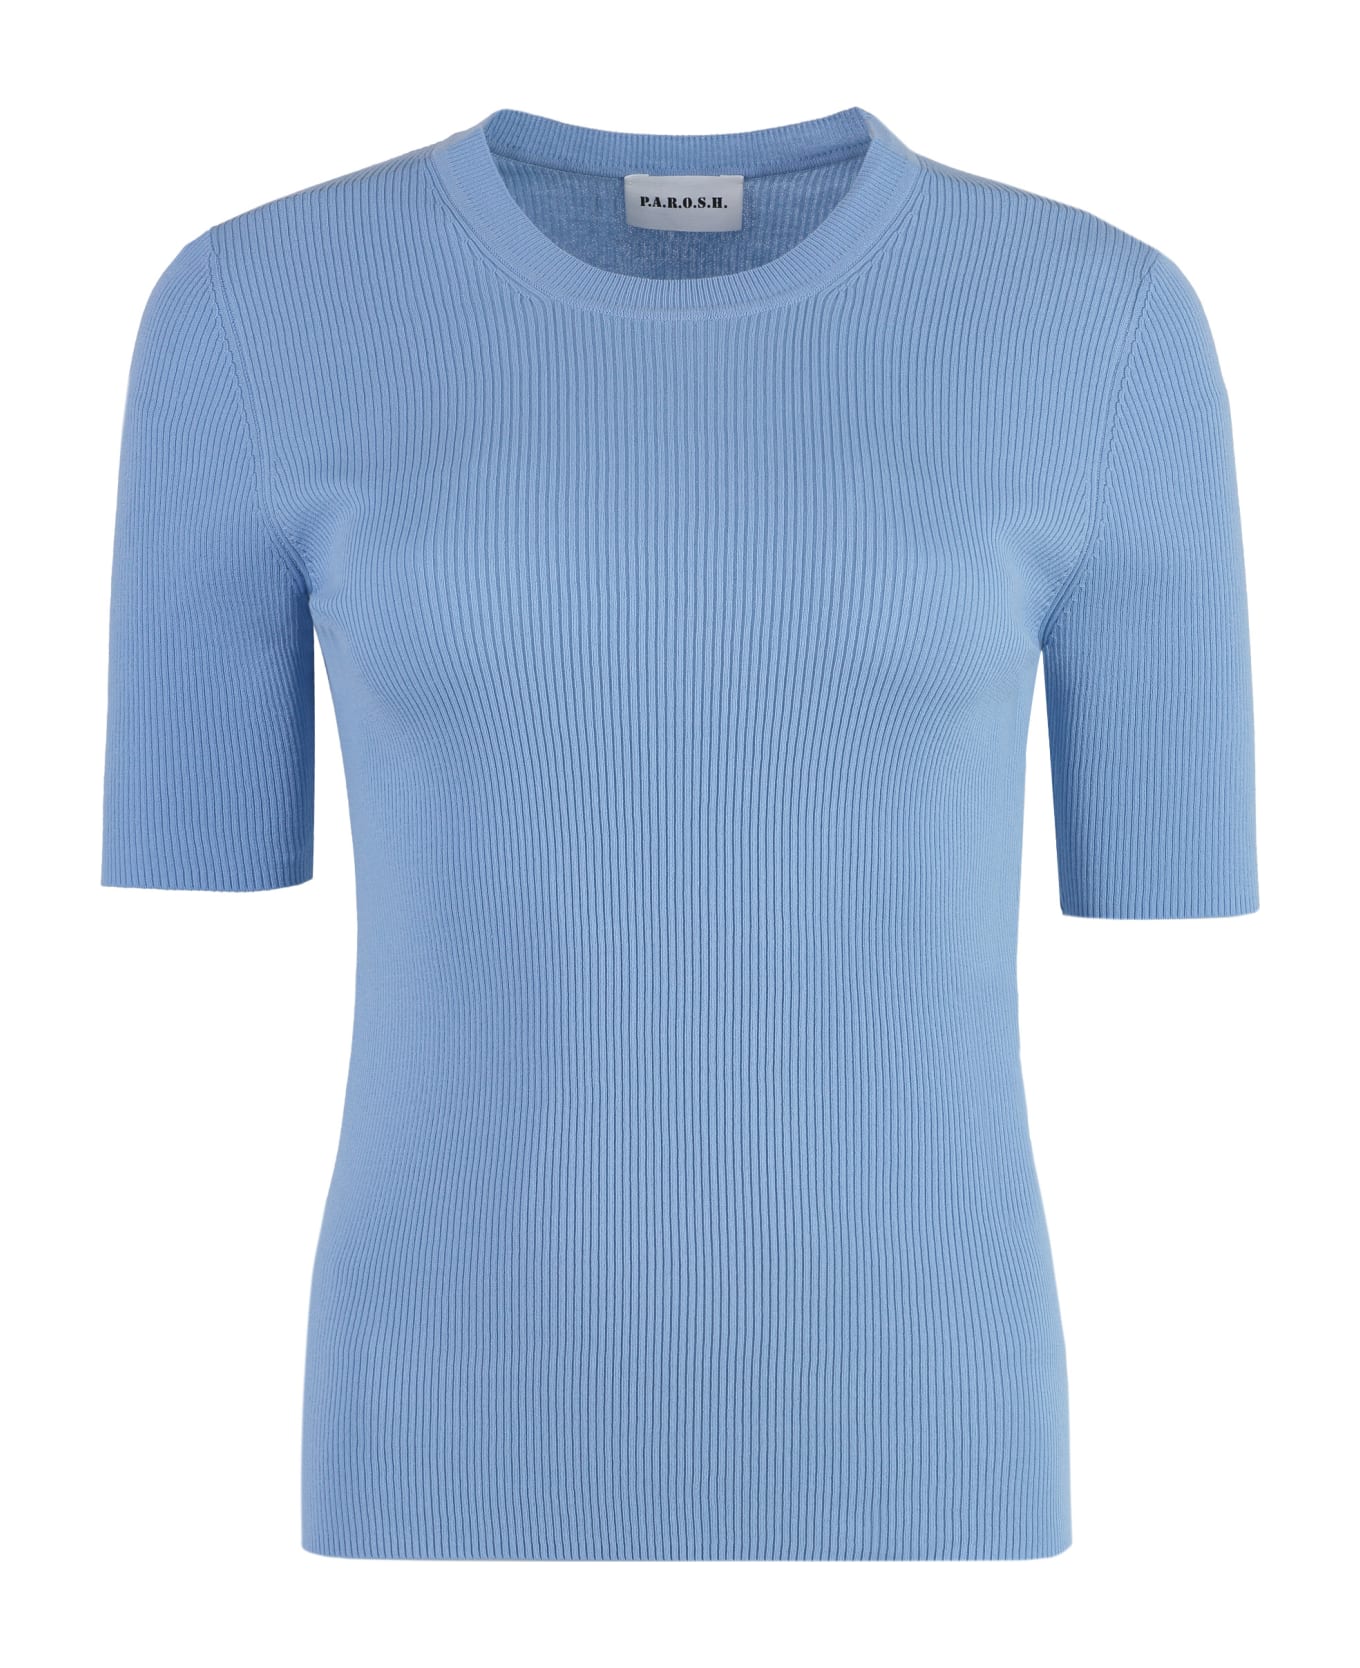 Parosh Cotton Knit T-shirt - Azzurro Polvere